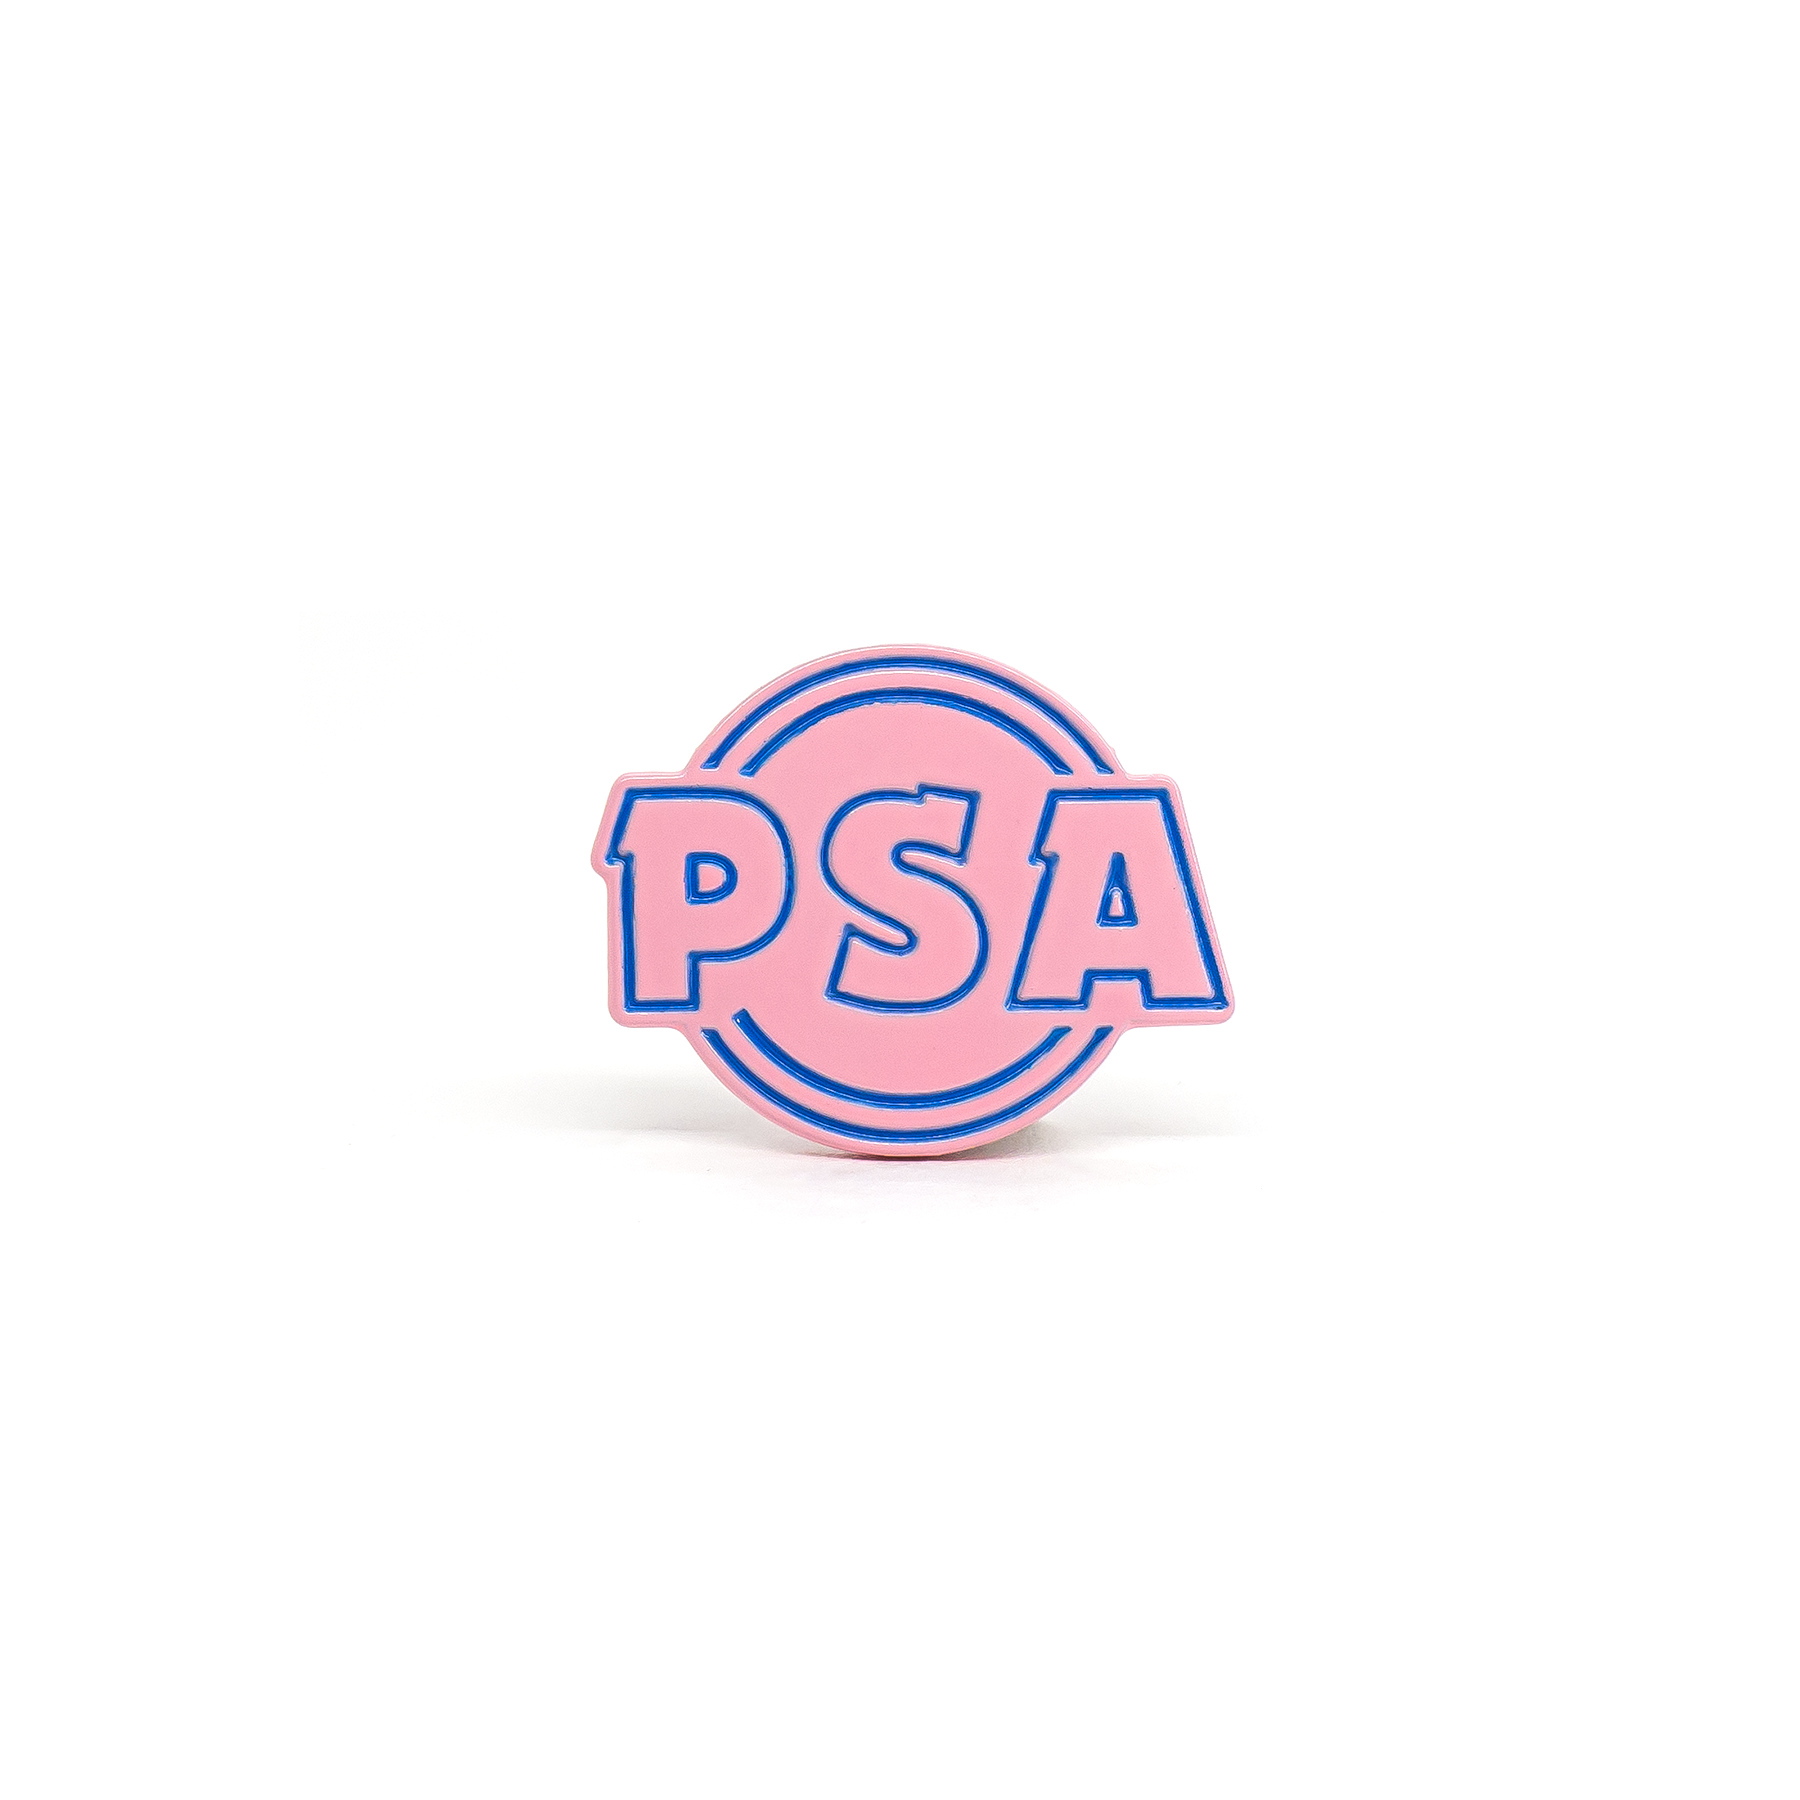 PSA logo enamel pin